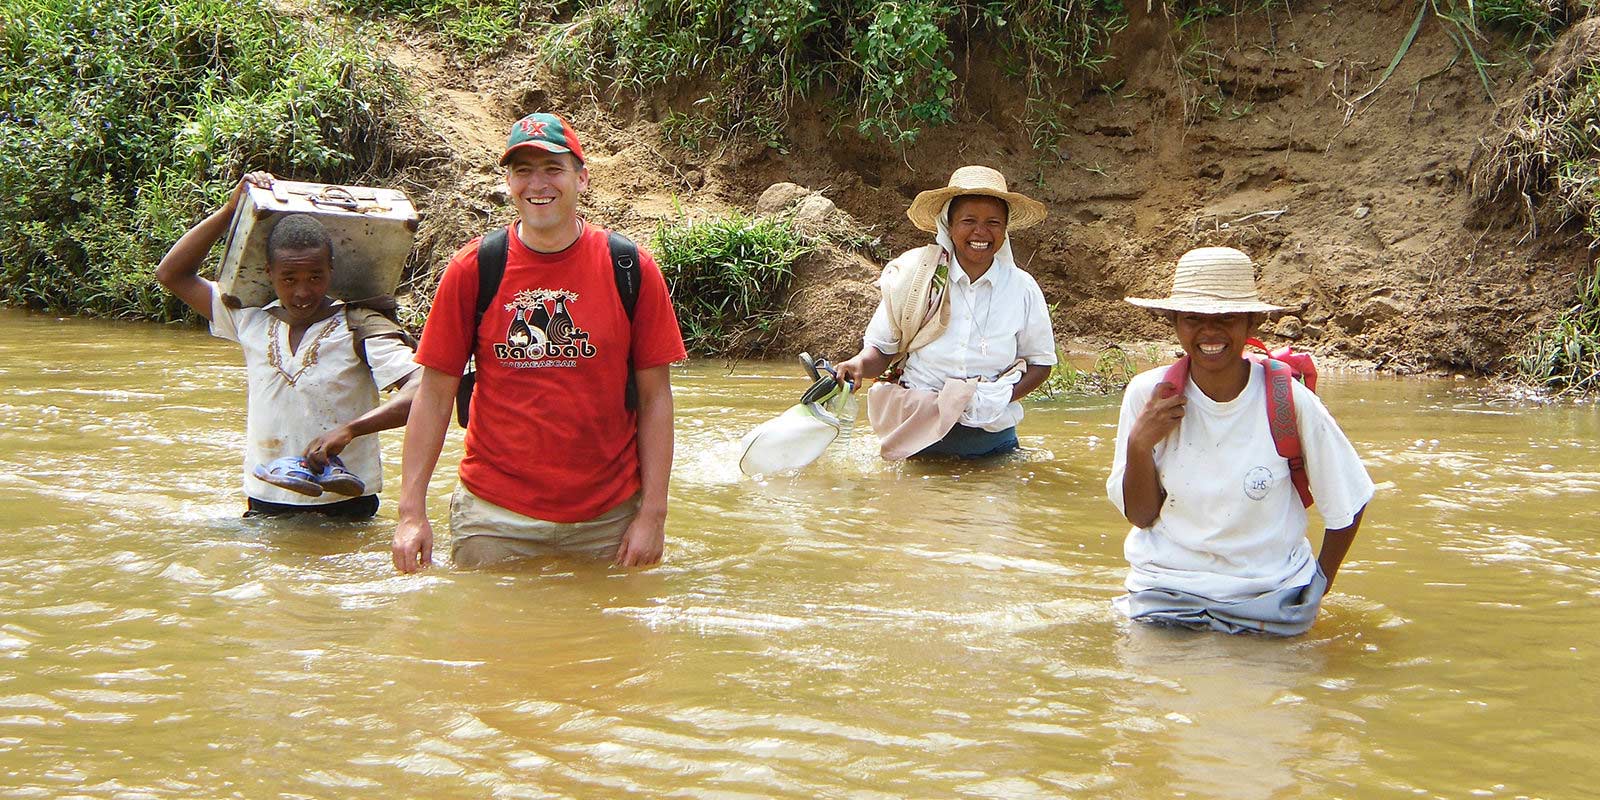 El padre Andrzej Dzida atraviesa el agua durante una patrulla misionera en Madagascar.